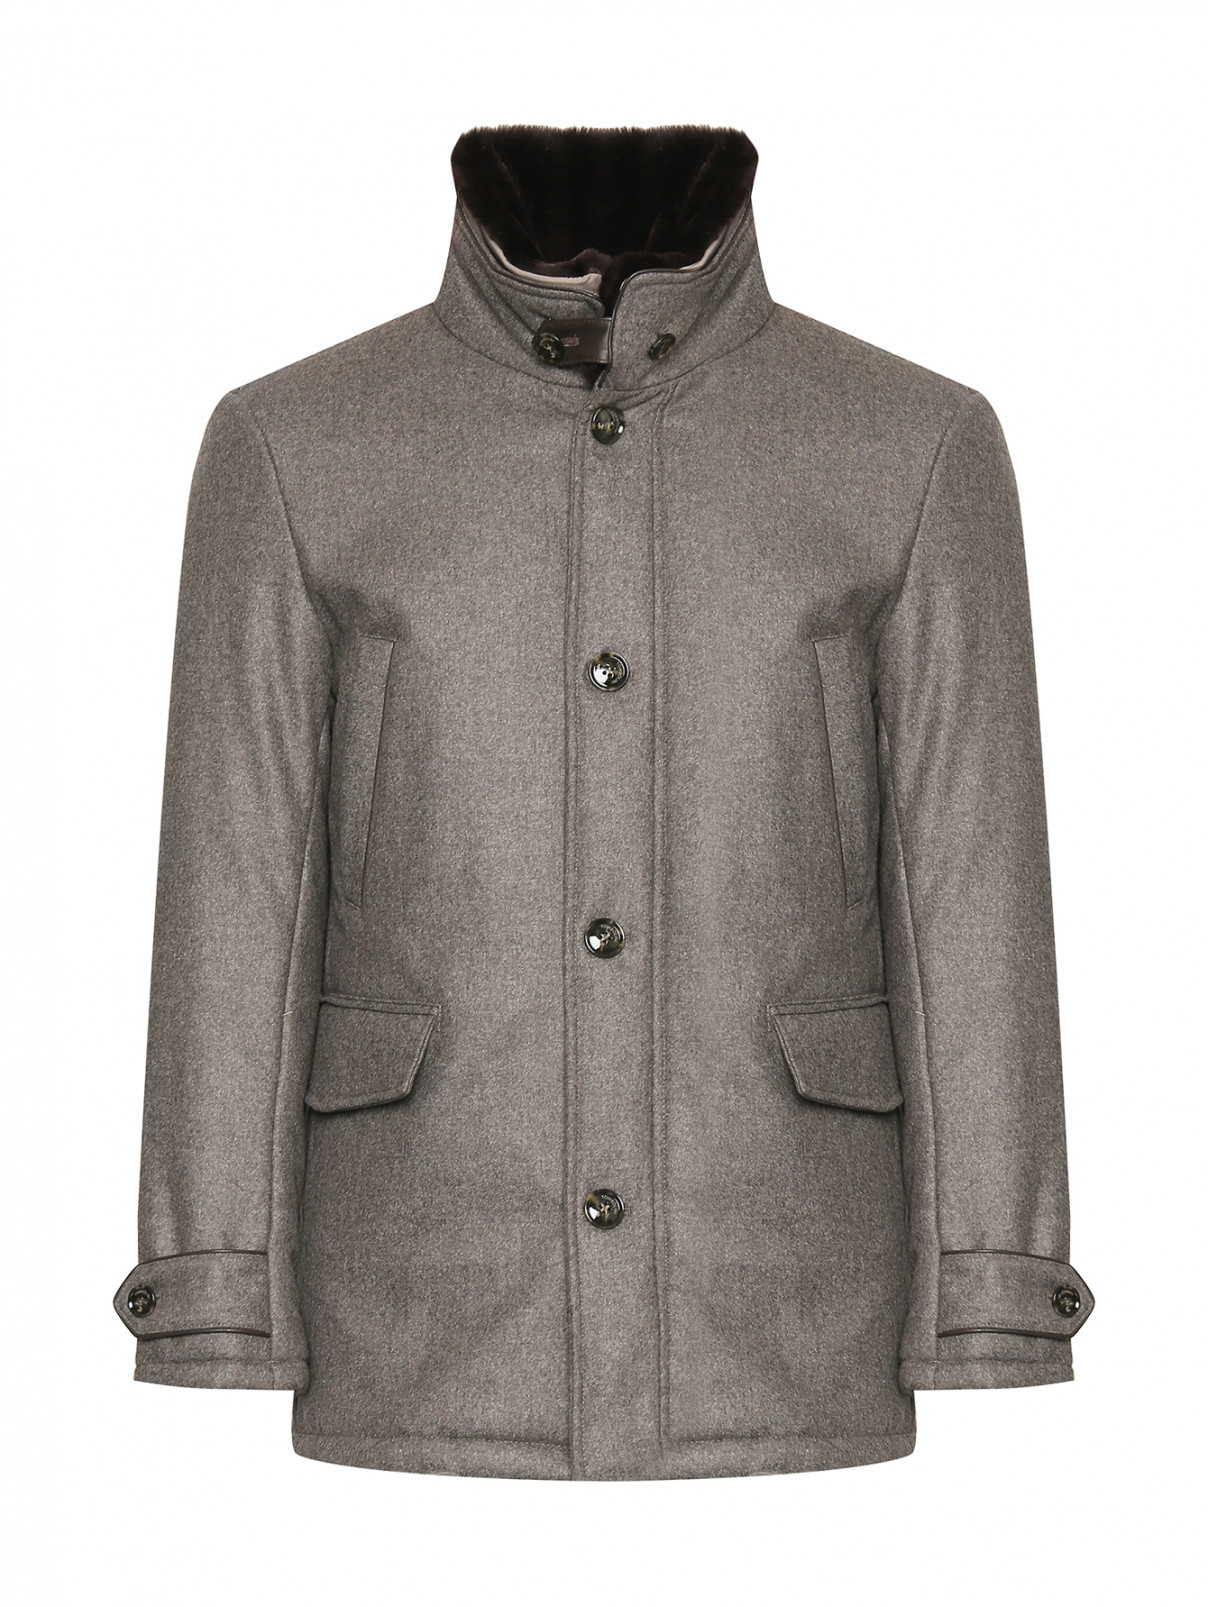 Утепленная куртка из шерсти со съемным воротником Tombolini  –  Общий вид  – Цвет:  Серый